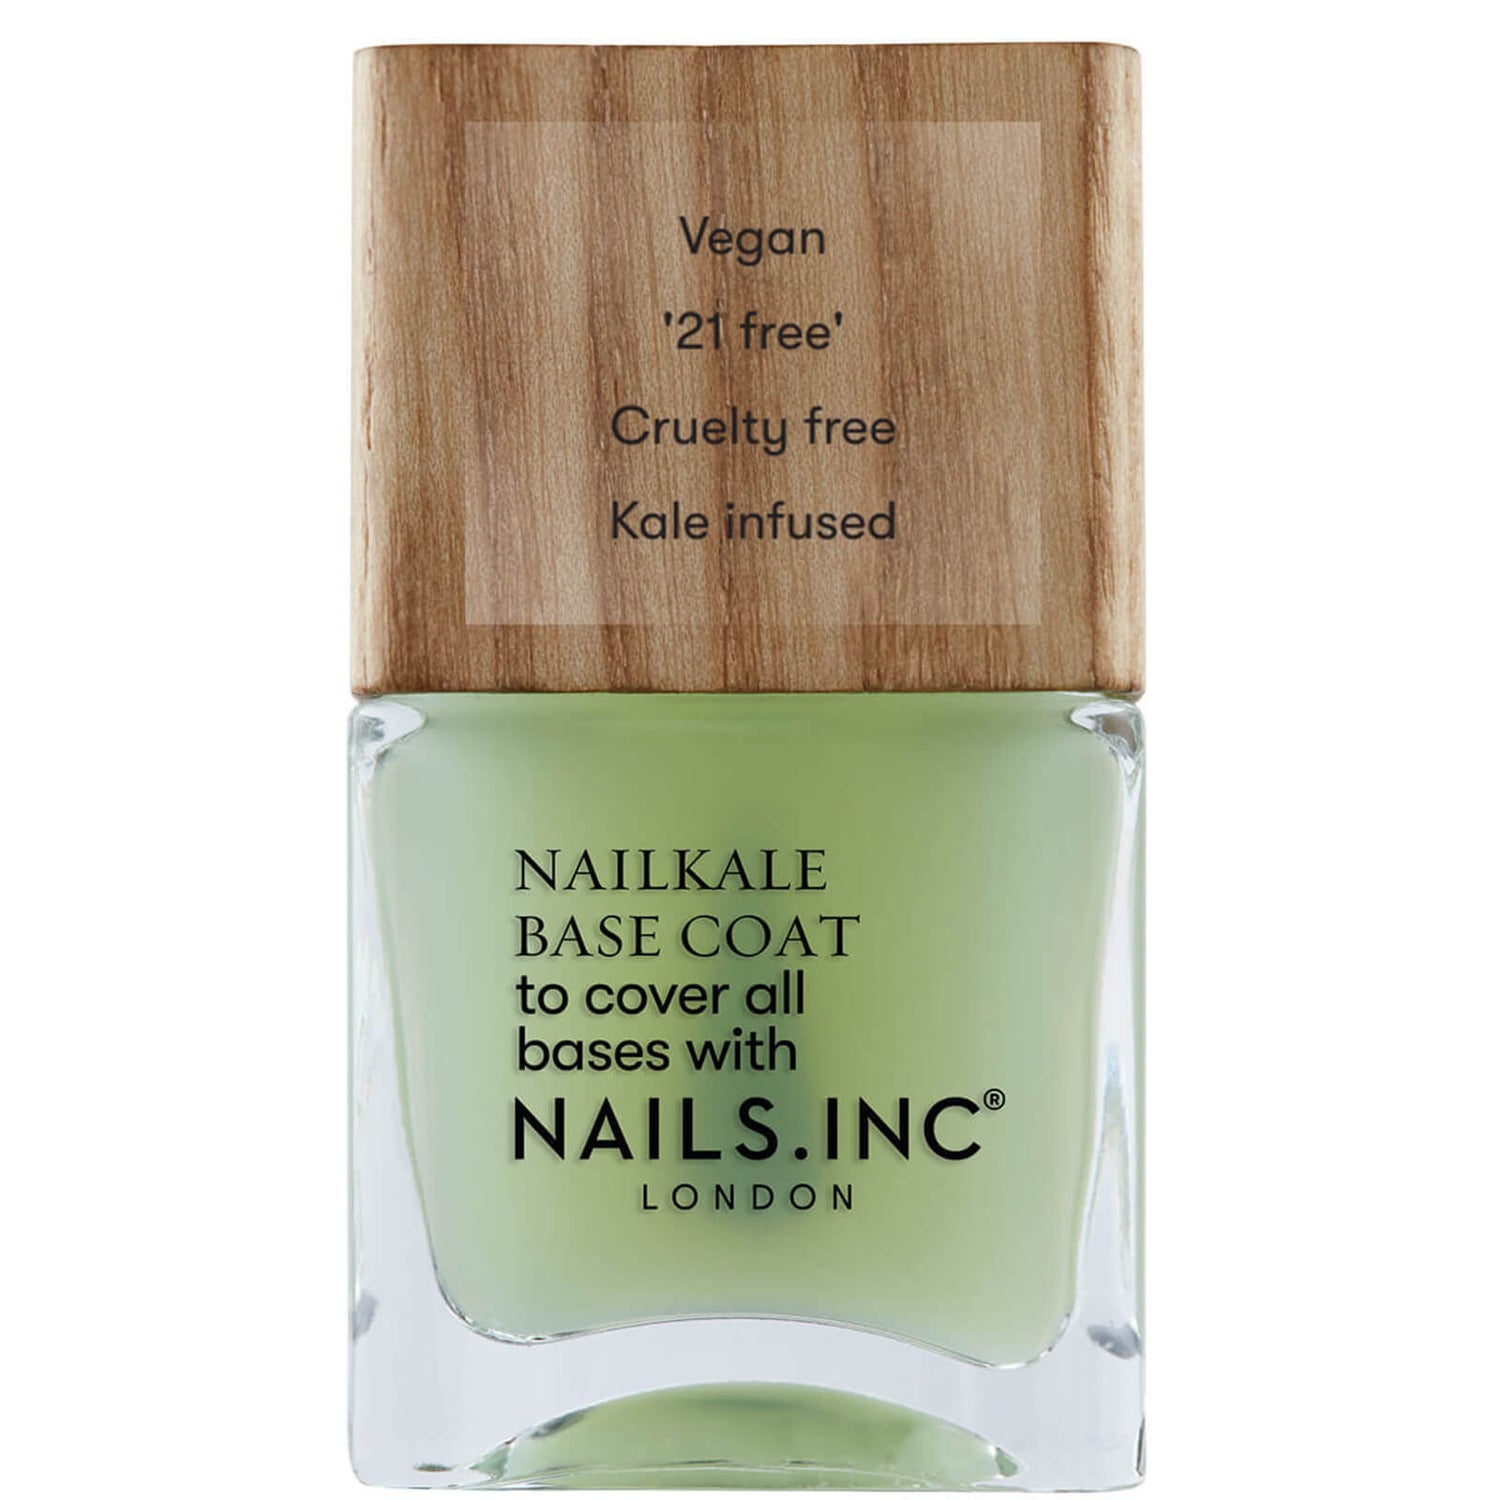 Nails.INC Nail Kale Superfood Base Coat 14 ml